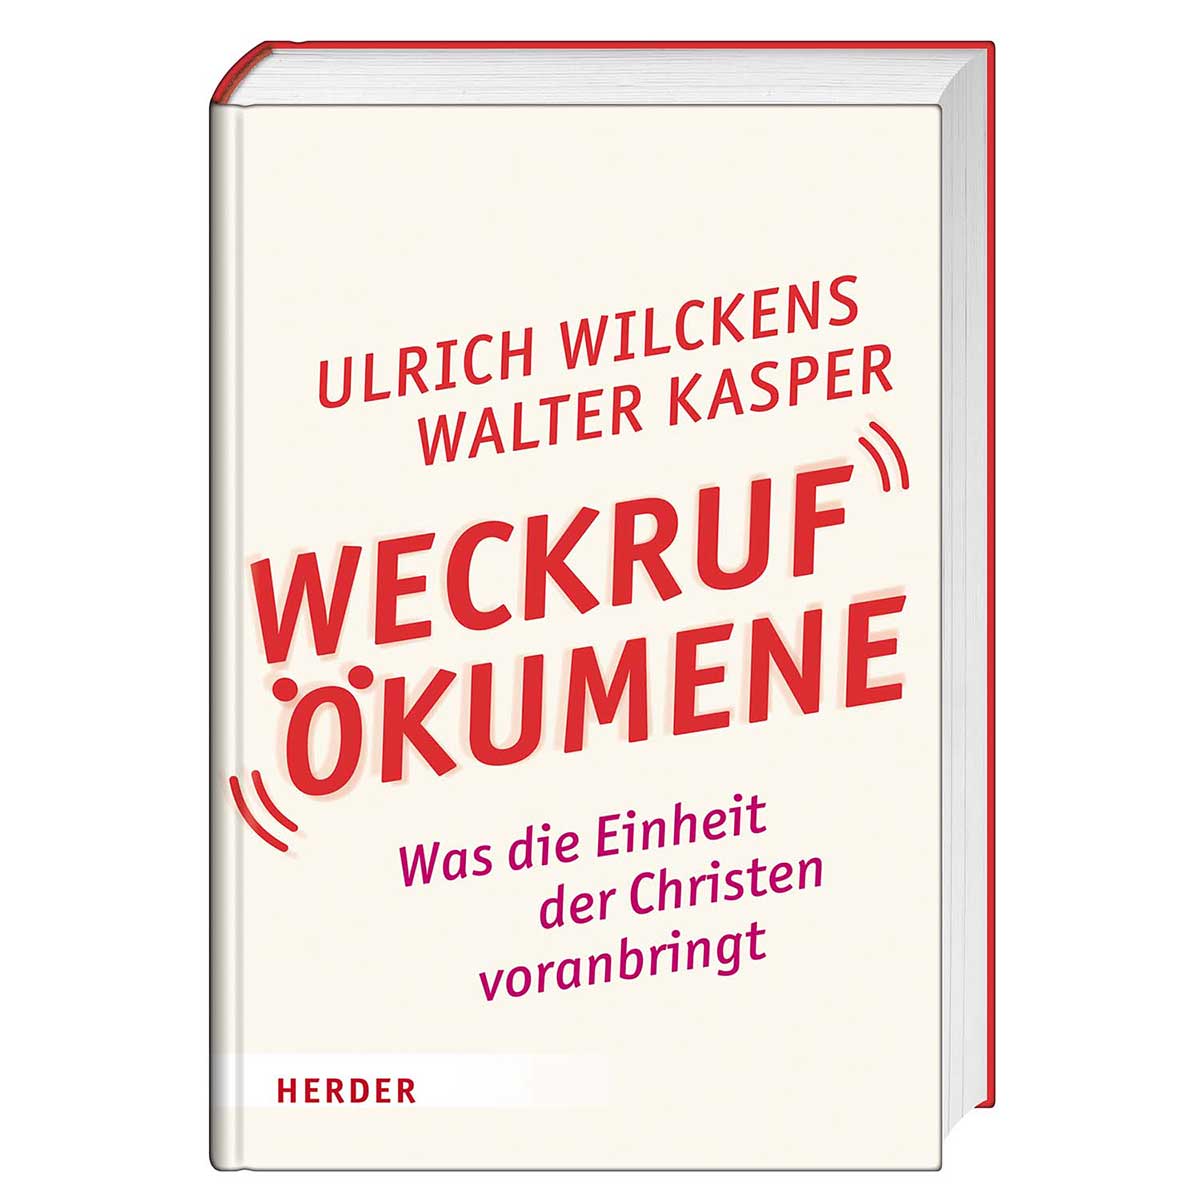 Weckruf Ökumene von Herder Verlag GmbH